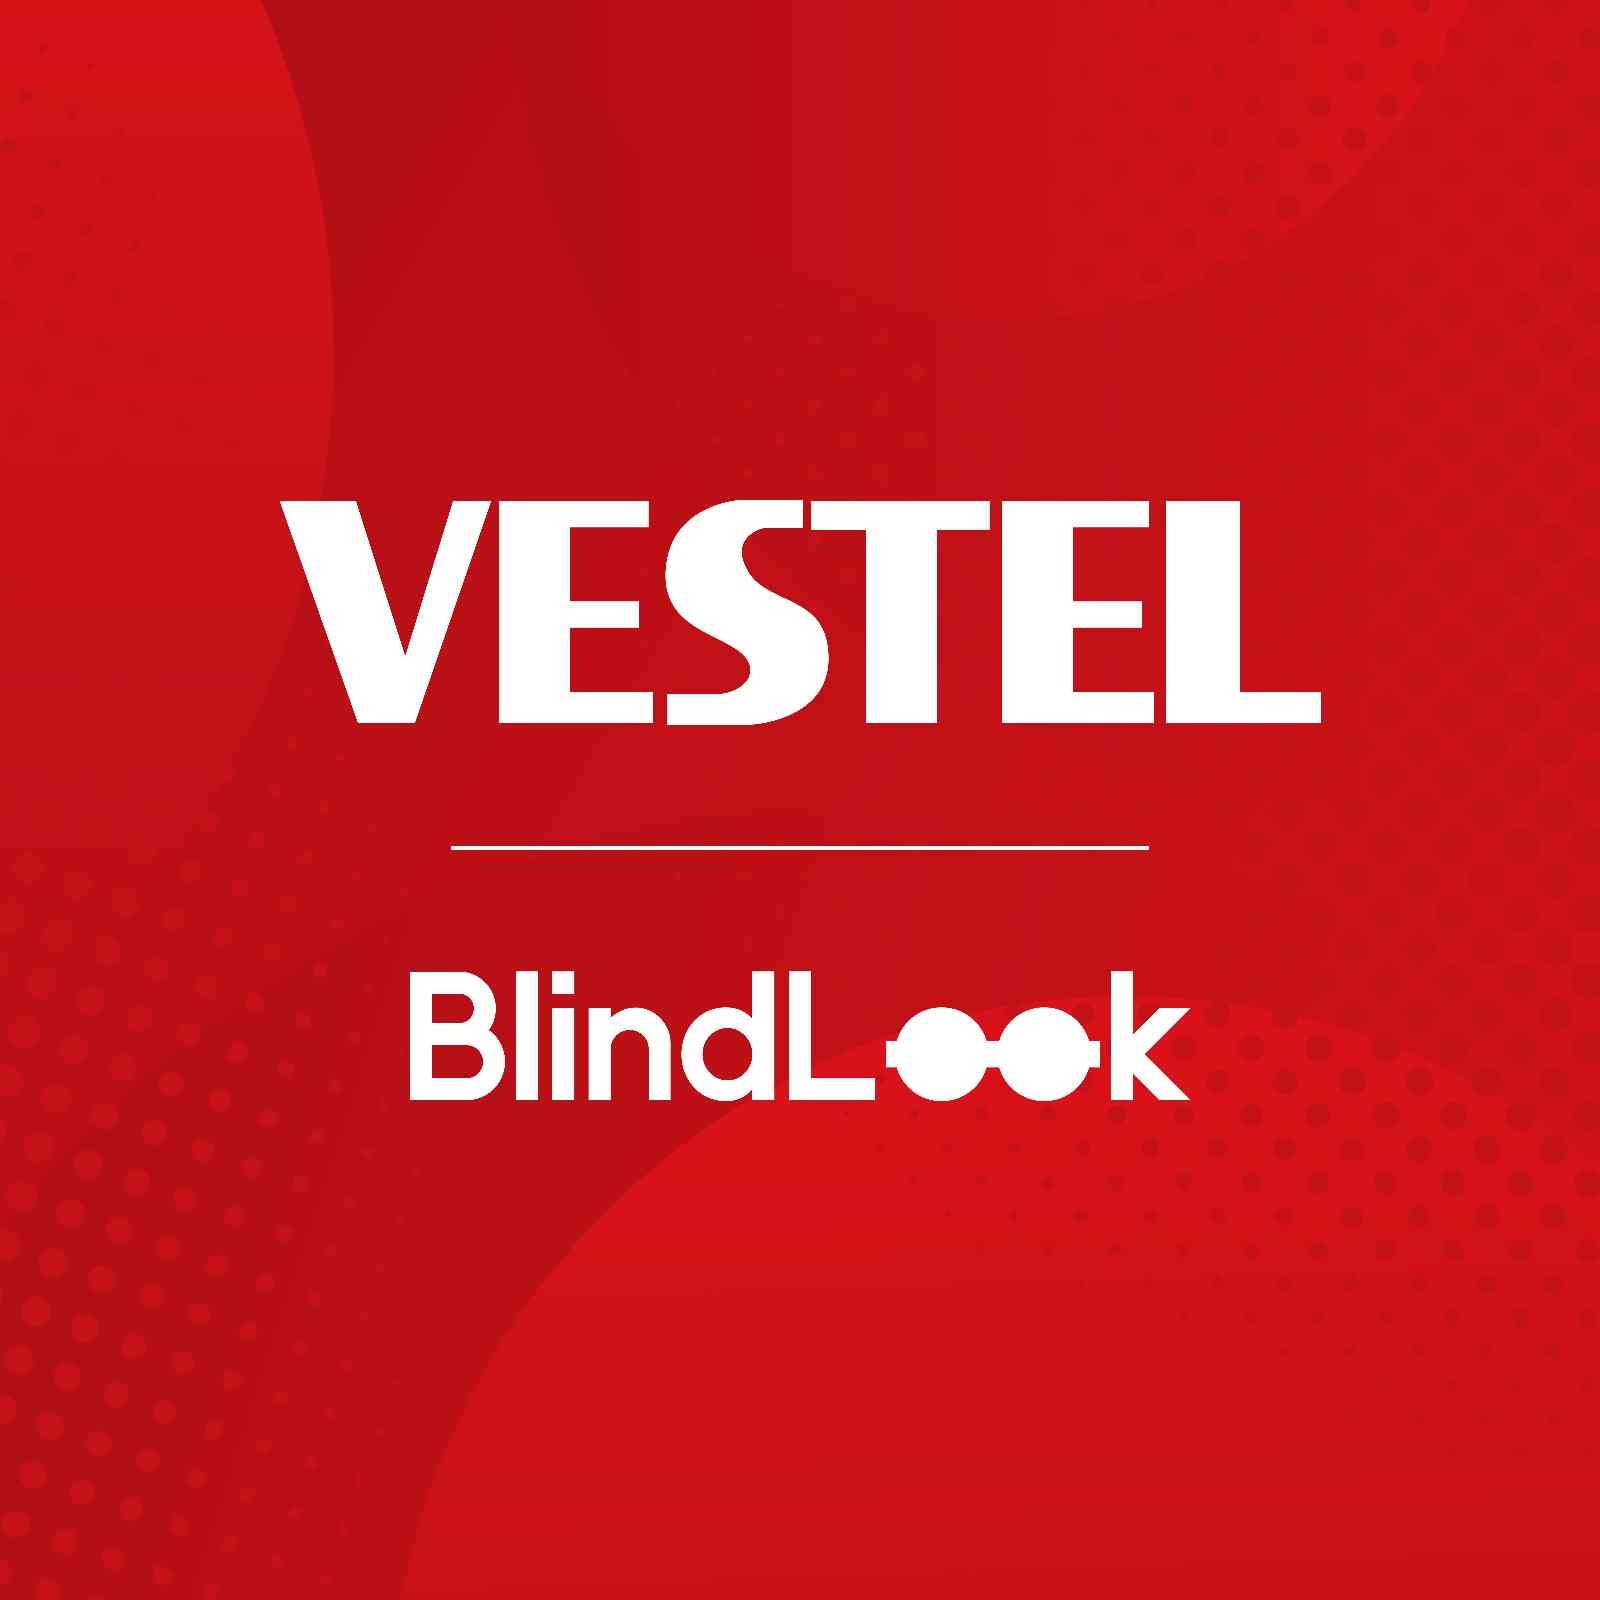 Vestel’den Görme Engelli Kullanıcılar İçin Önemli Adım